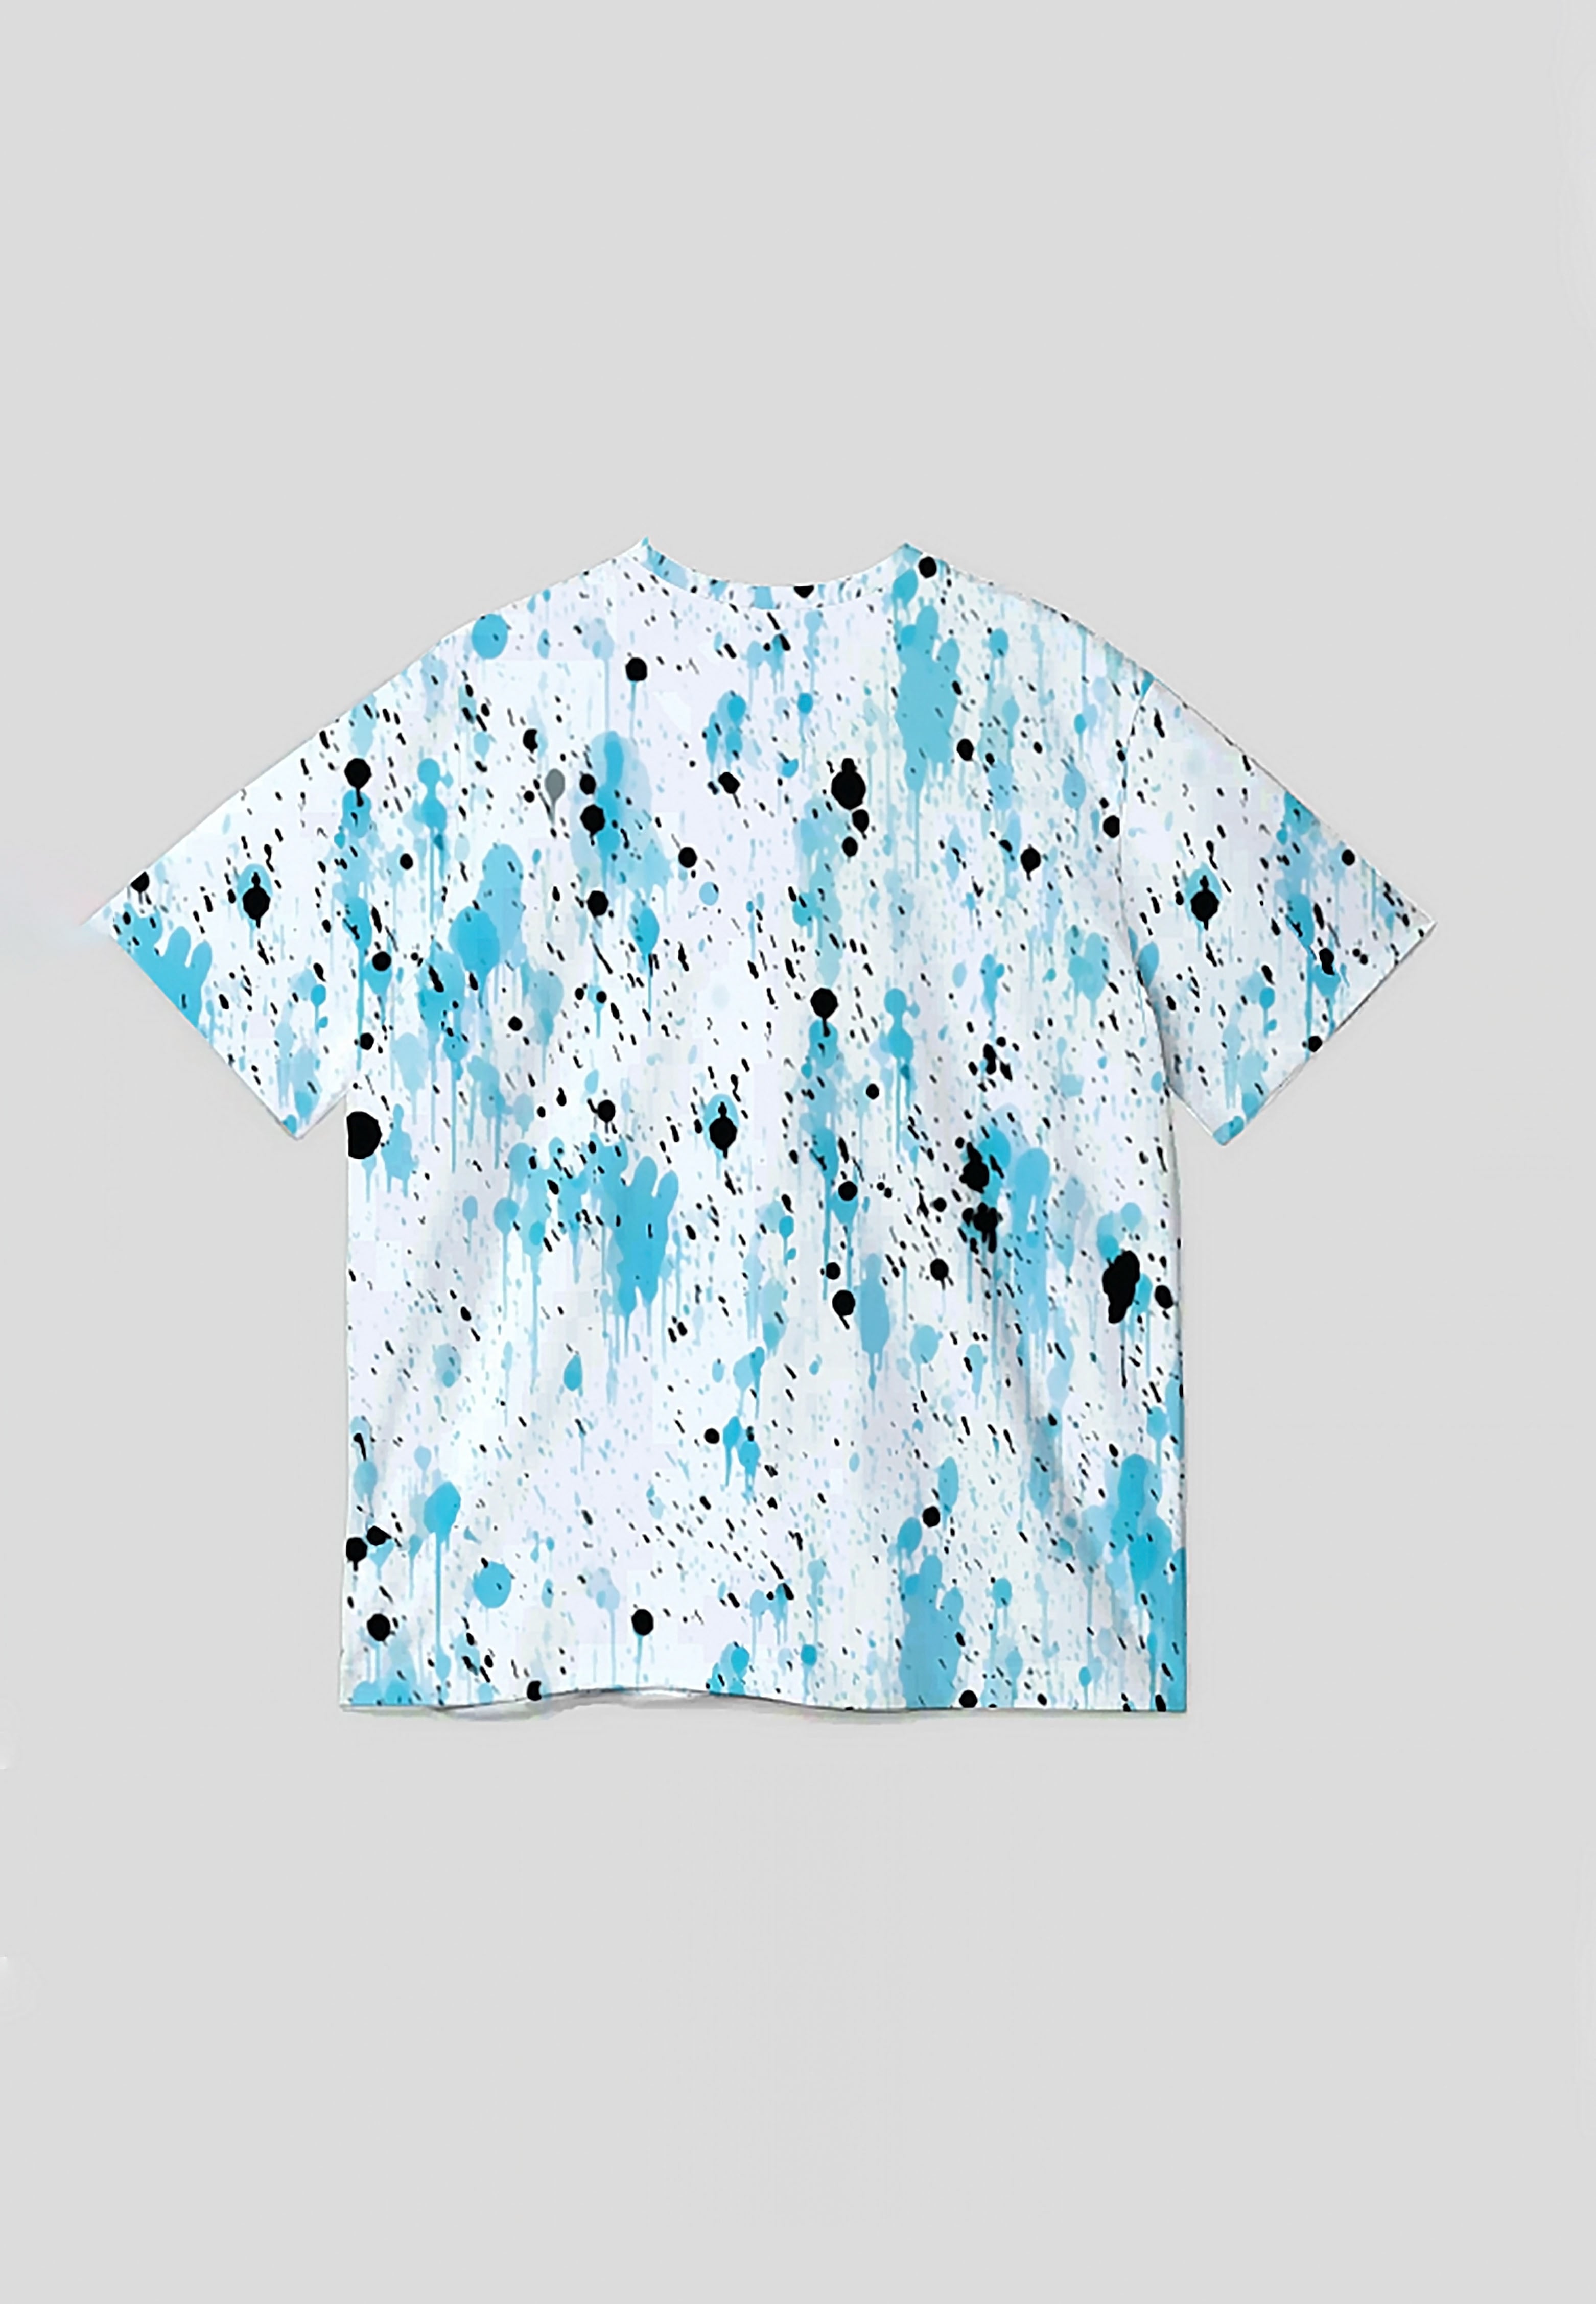 NX014 kaos oversize motif full pattern abstrak biru muda grunge full print